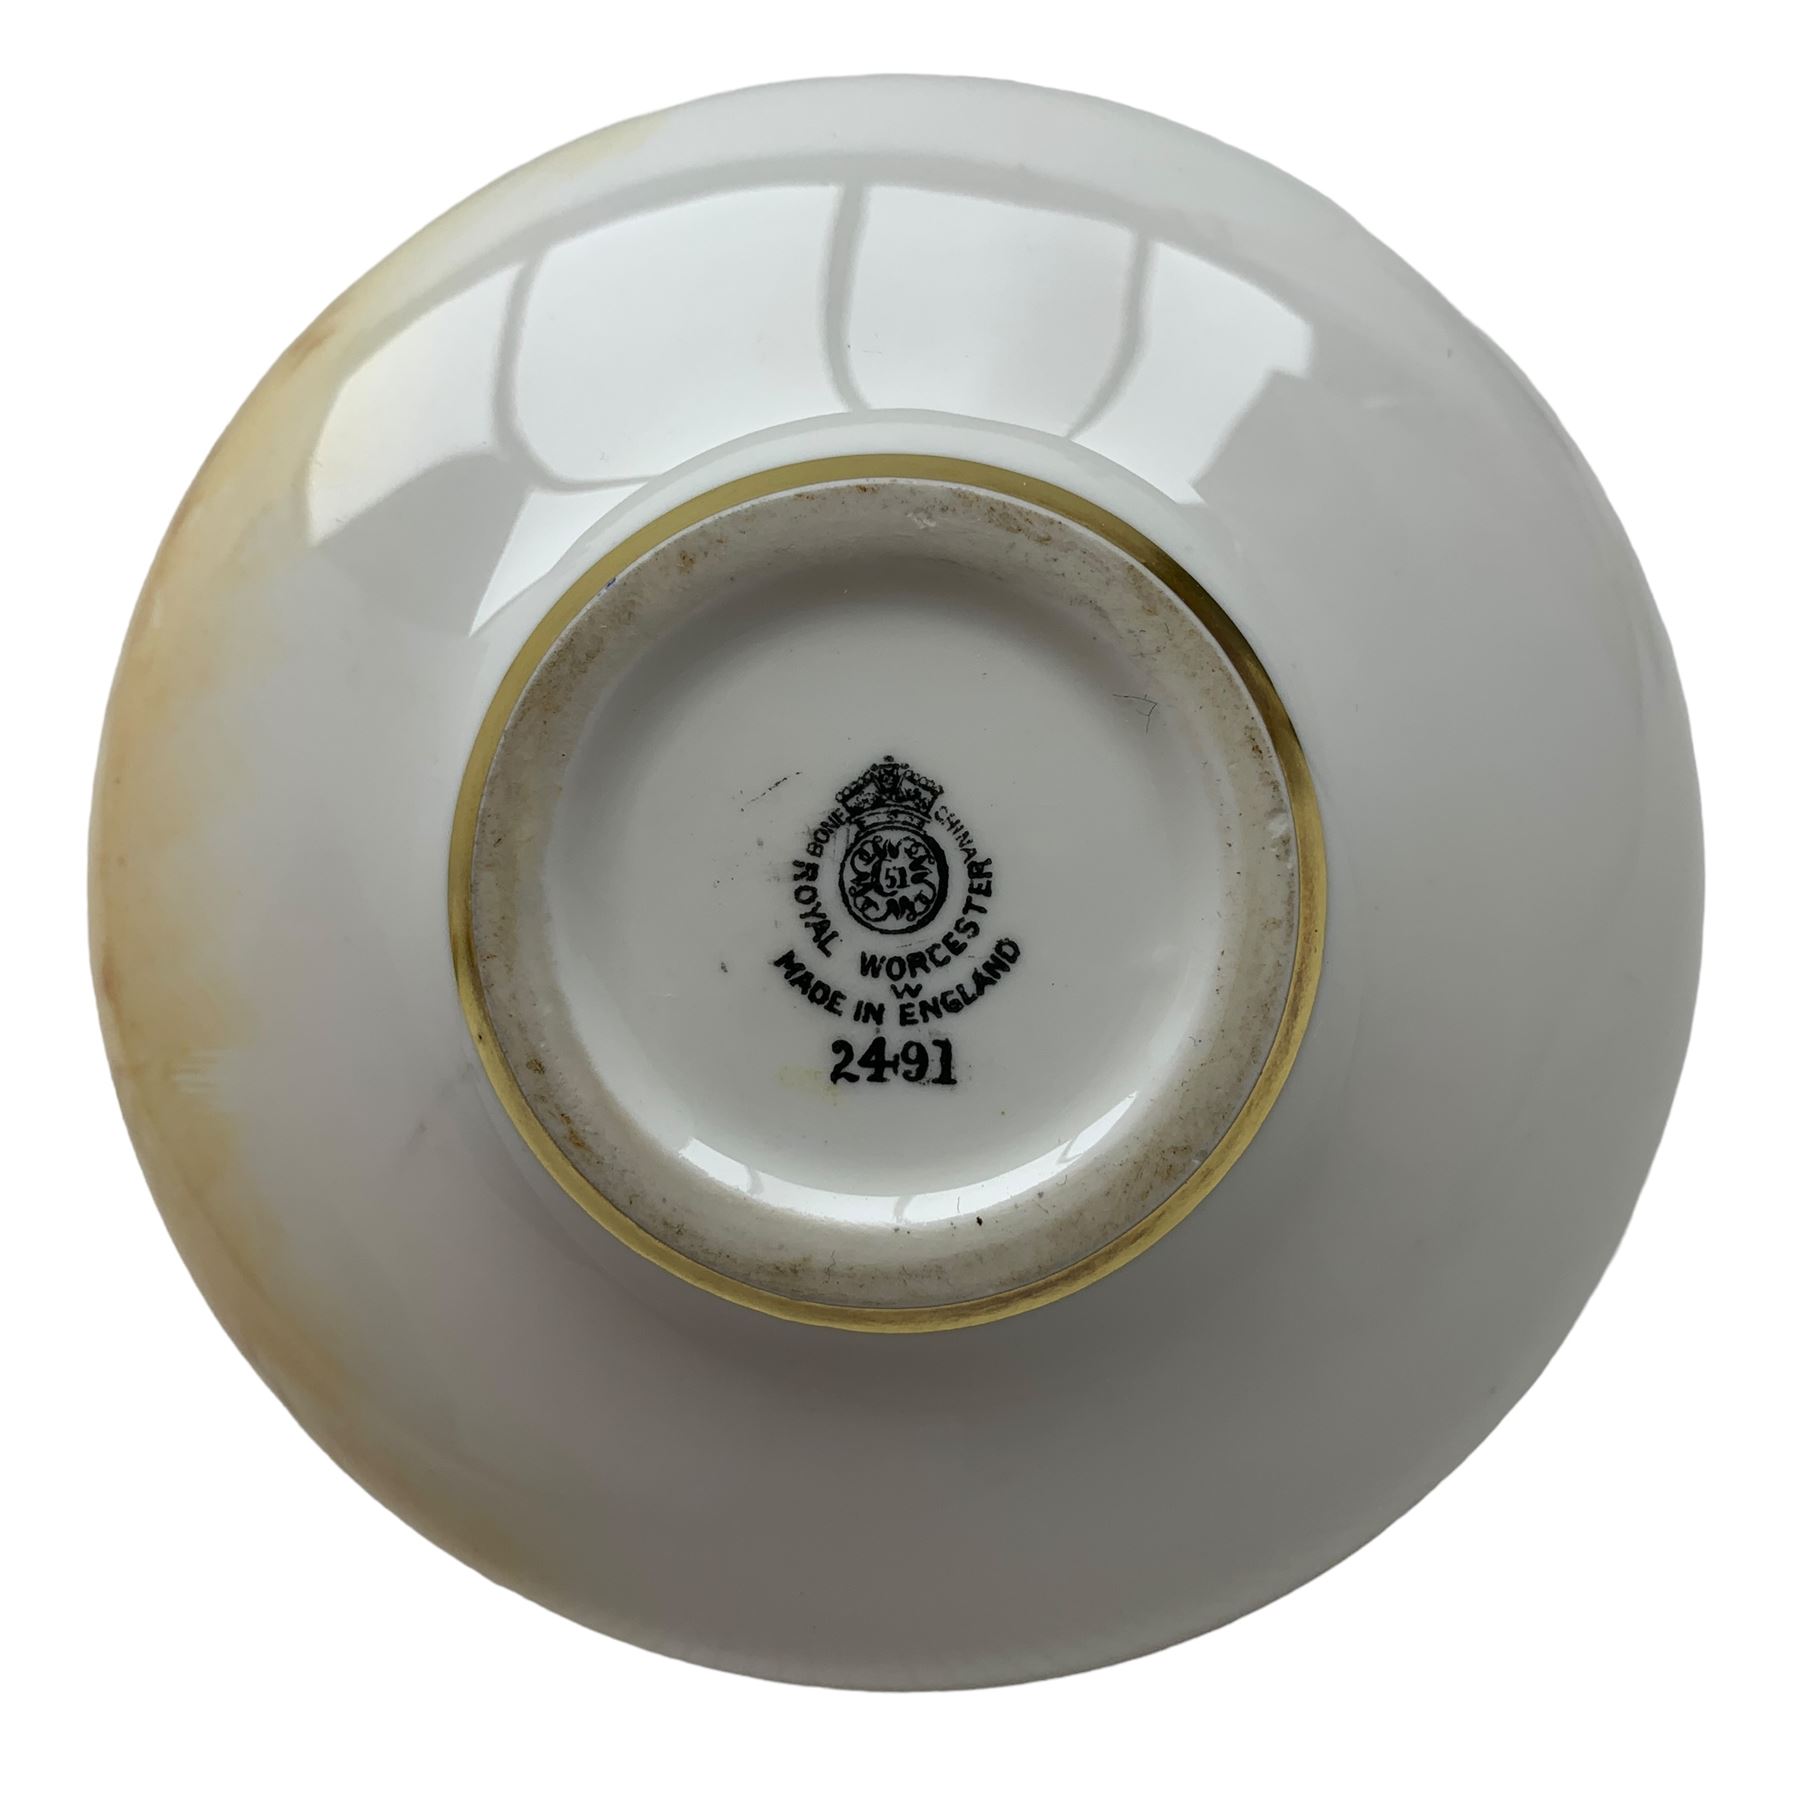 Royal Worcester porcelain squat form vase - Image 2 of 5